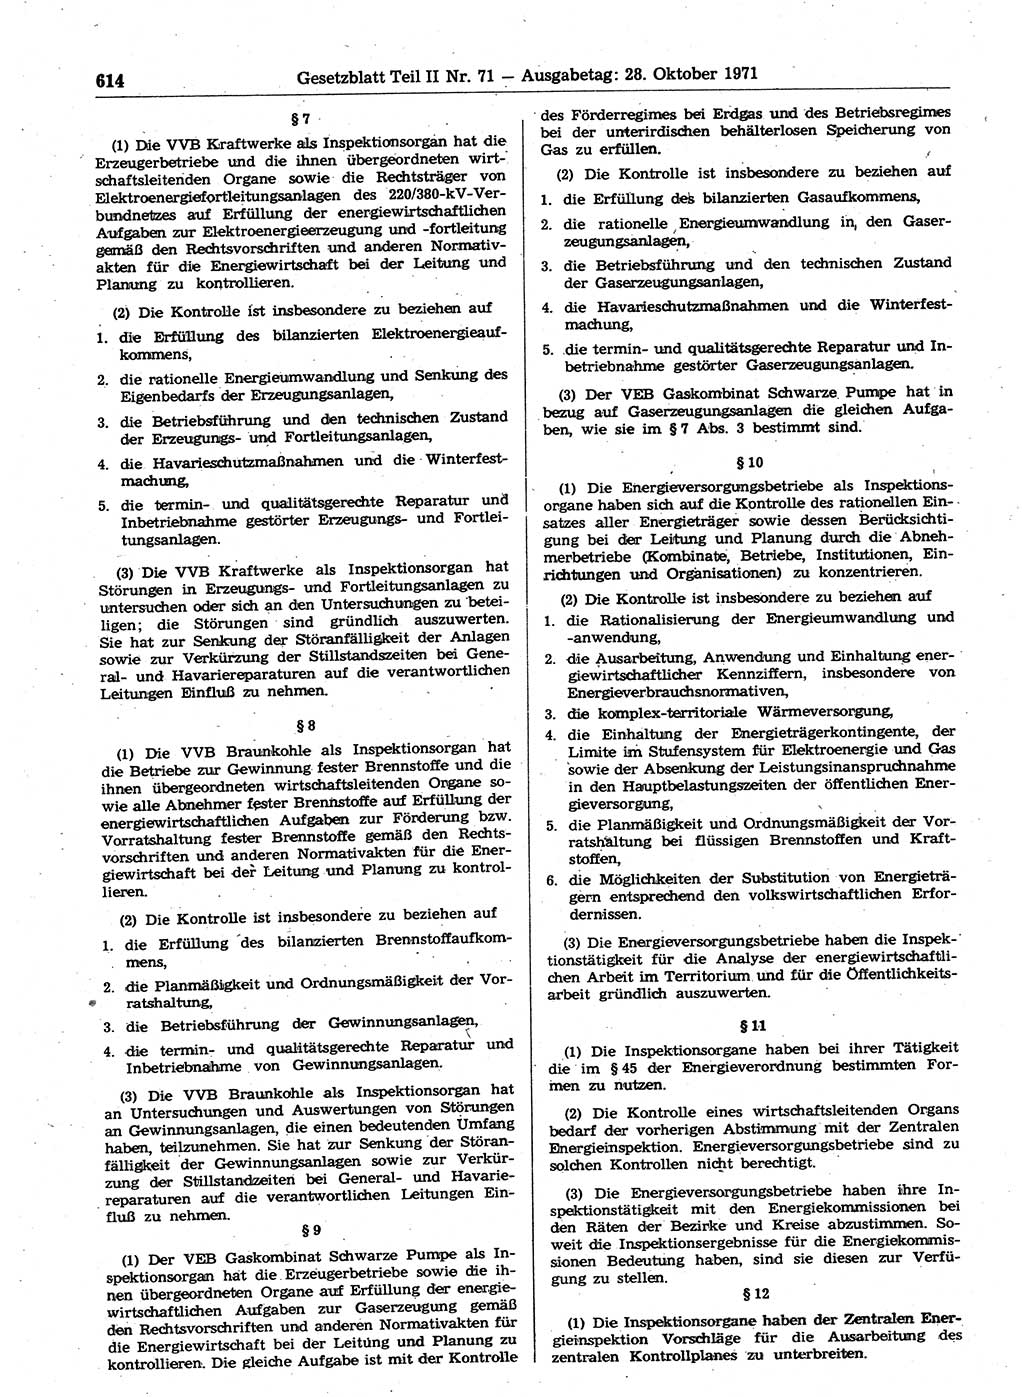 Gesetzblatt (GBl.) der Deutschen Demokratischen Republik (DDR) Teil ⅠⅠ 1971, Seite 614 (GBl. DDR ⅠⅠ 1971, S. 614)